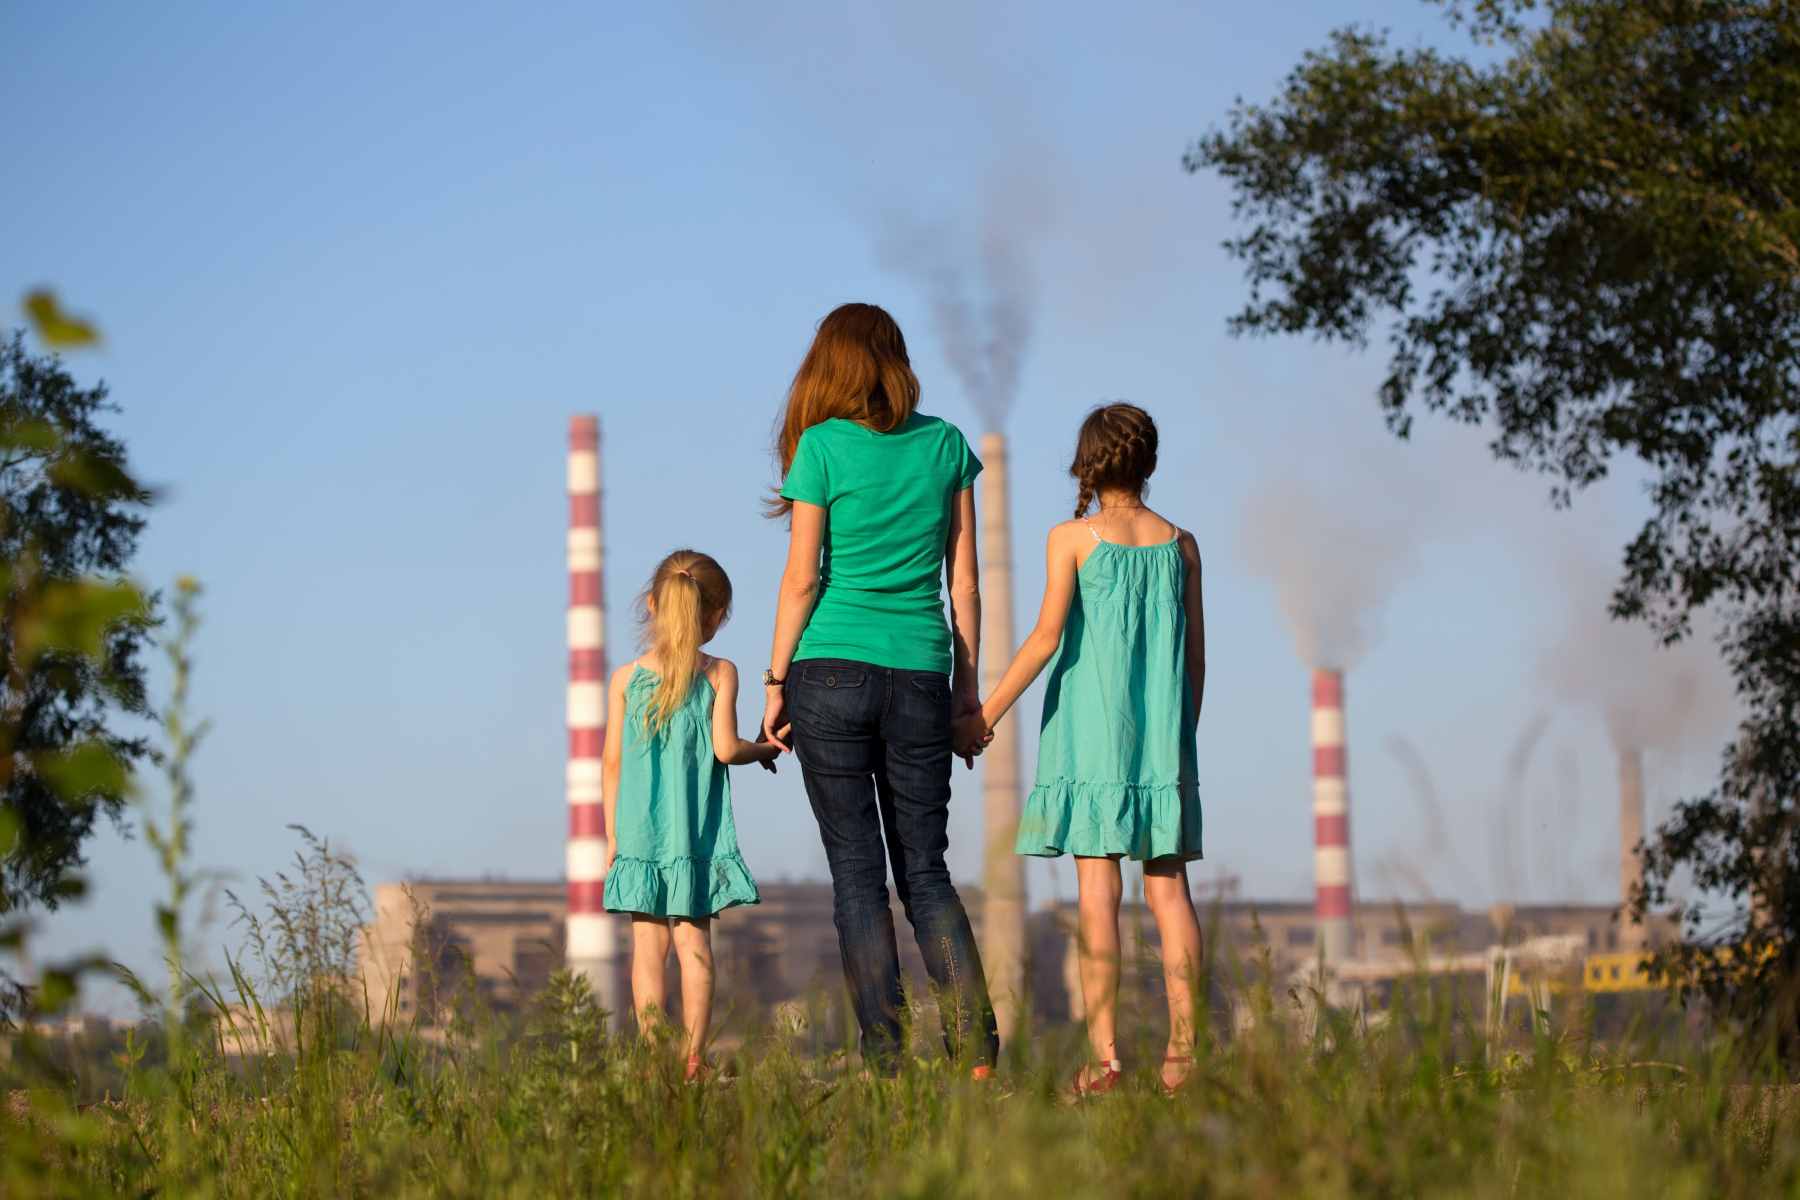 Contaminación de una fábrica © Shutterstock (Mostovyi Sergii Igorevich)